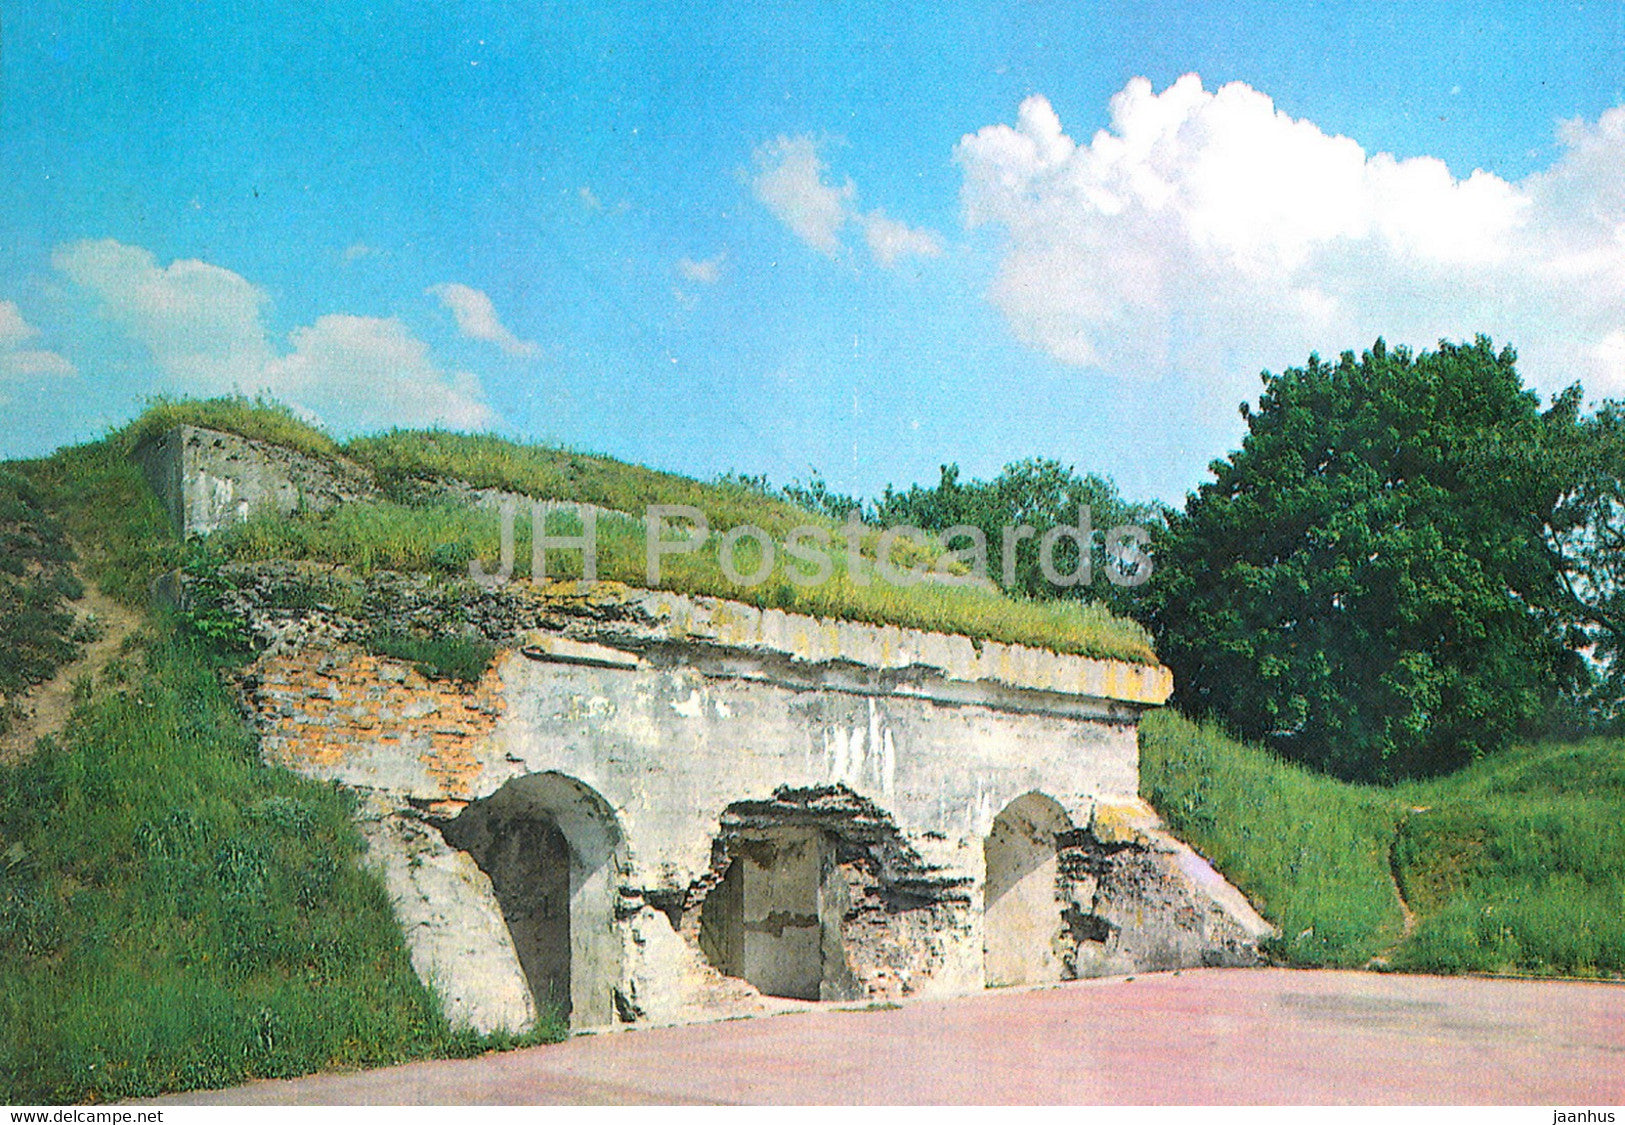 Brest Fortress - Kobrin Fortifications - 1984 - Belarus USSR - unused - JH Postcards